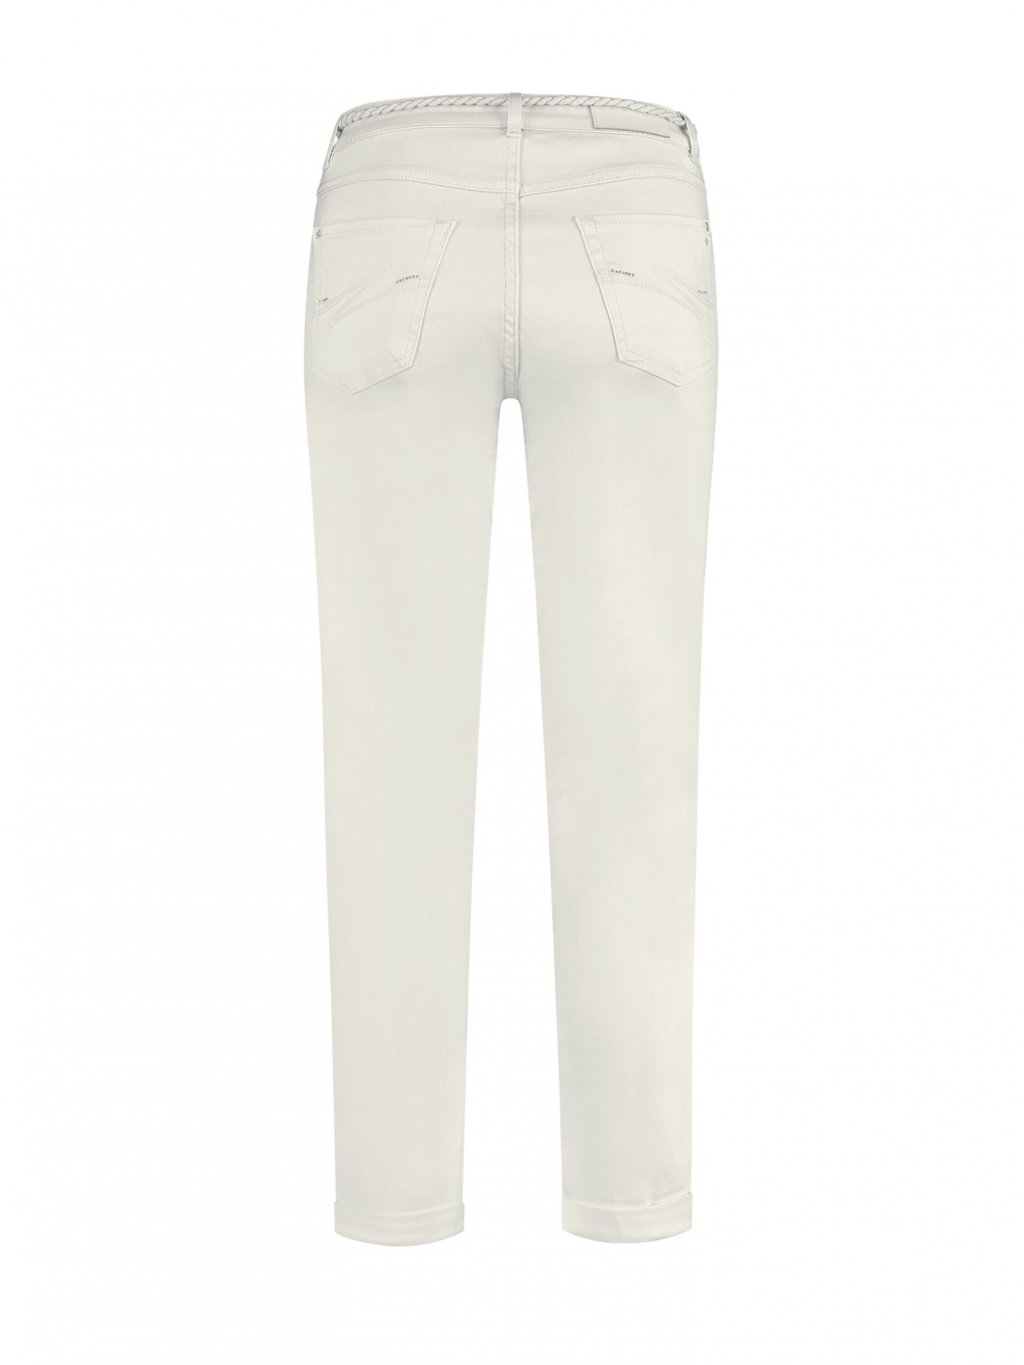 Kalhoty Para Mi Bobby 005091 - 003 krémové volné džíny 